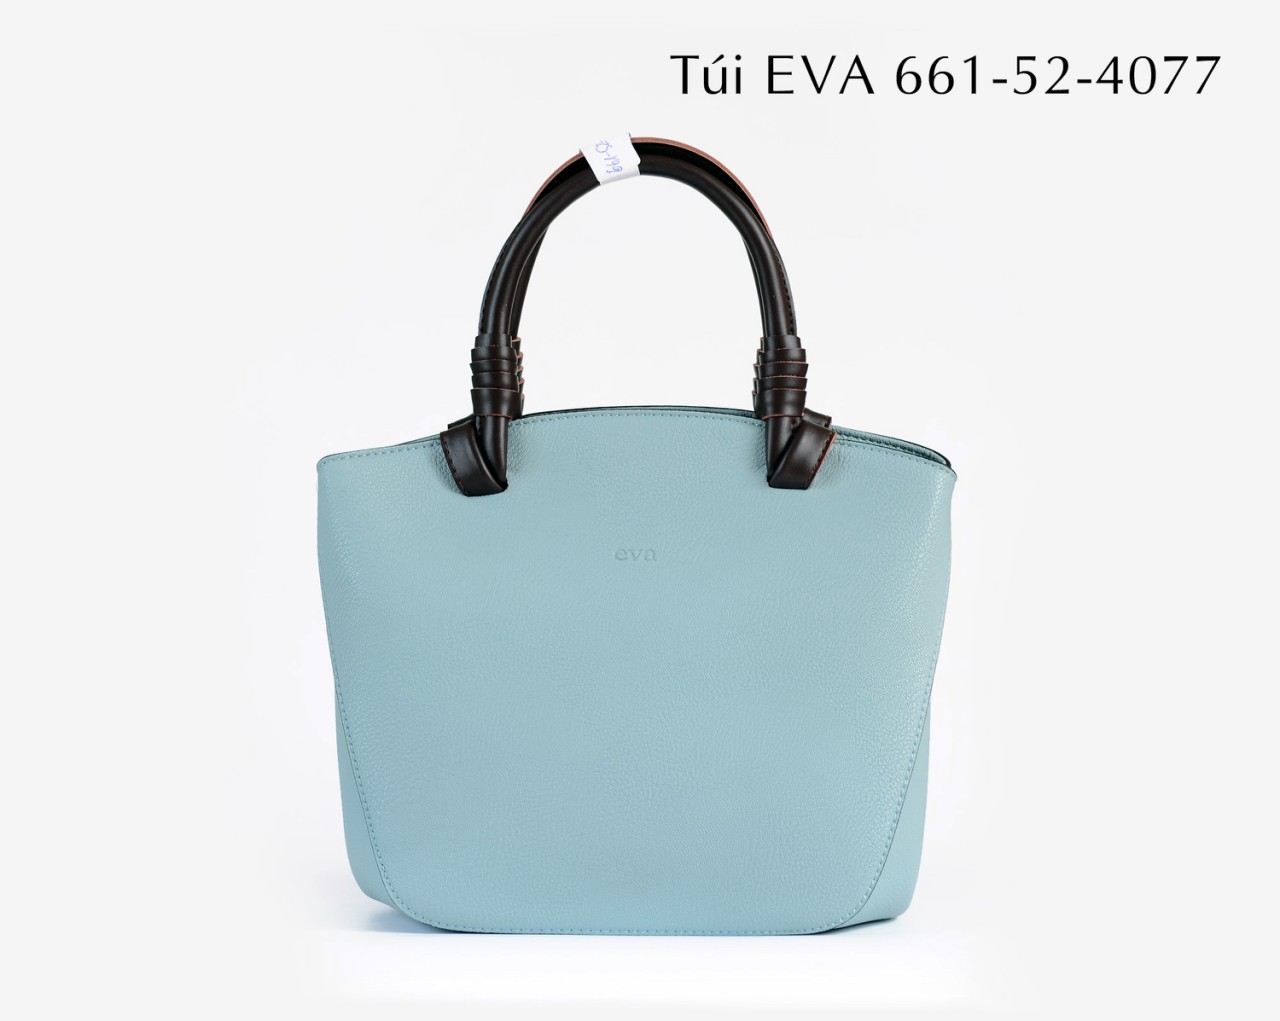 Túi xách nữ EVA661-52-4077 kiểu dáng trang nhã, tinh tế mới